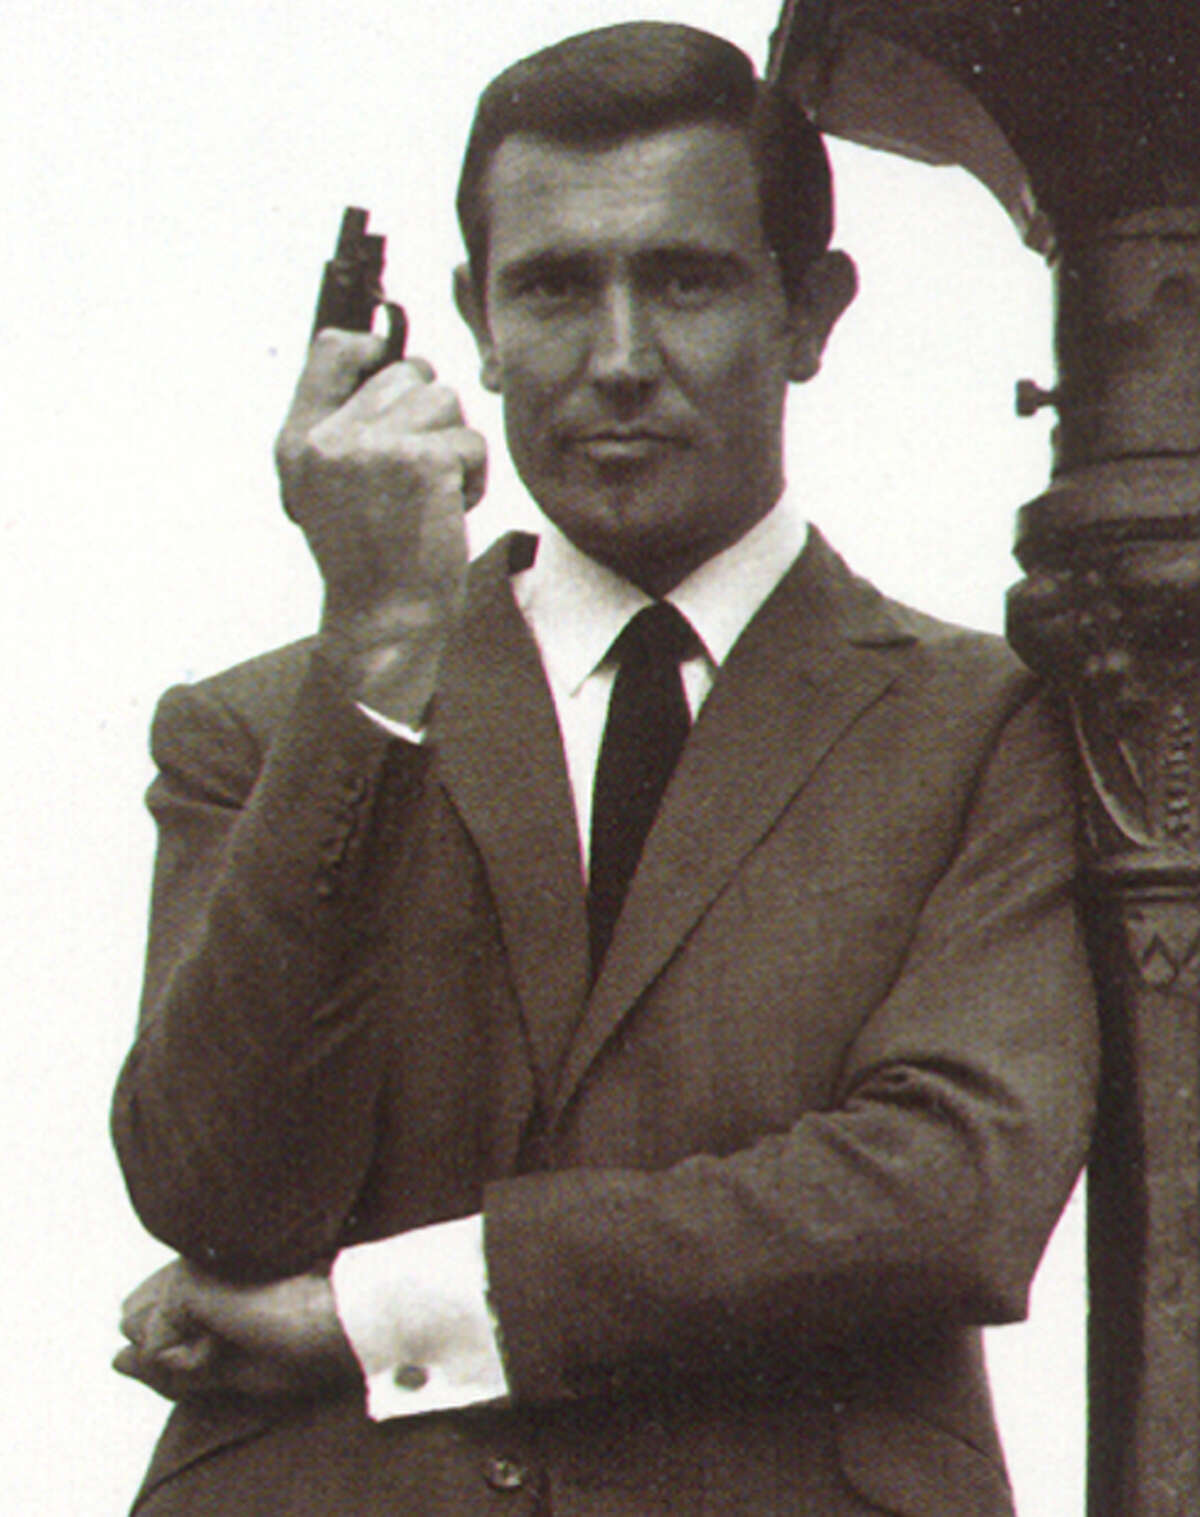 George Lazenby as James Bond. On Her Majesty's Secret Service